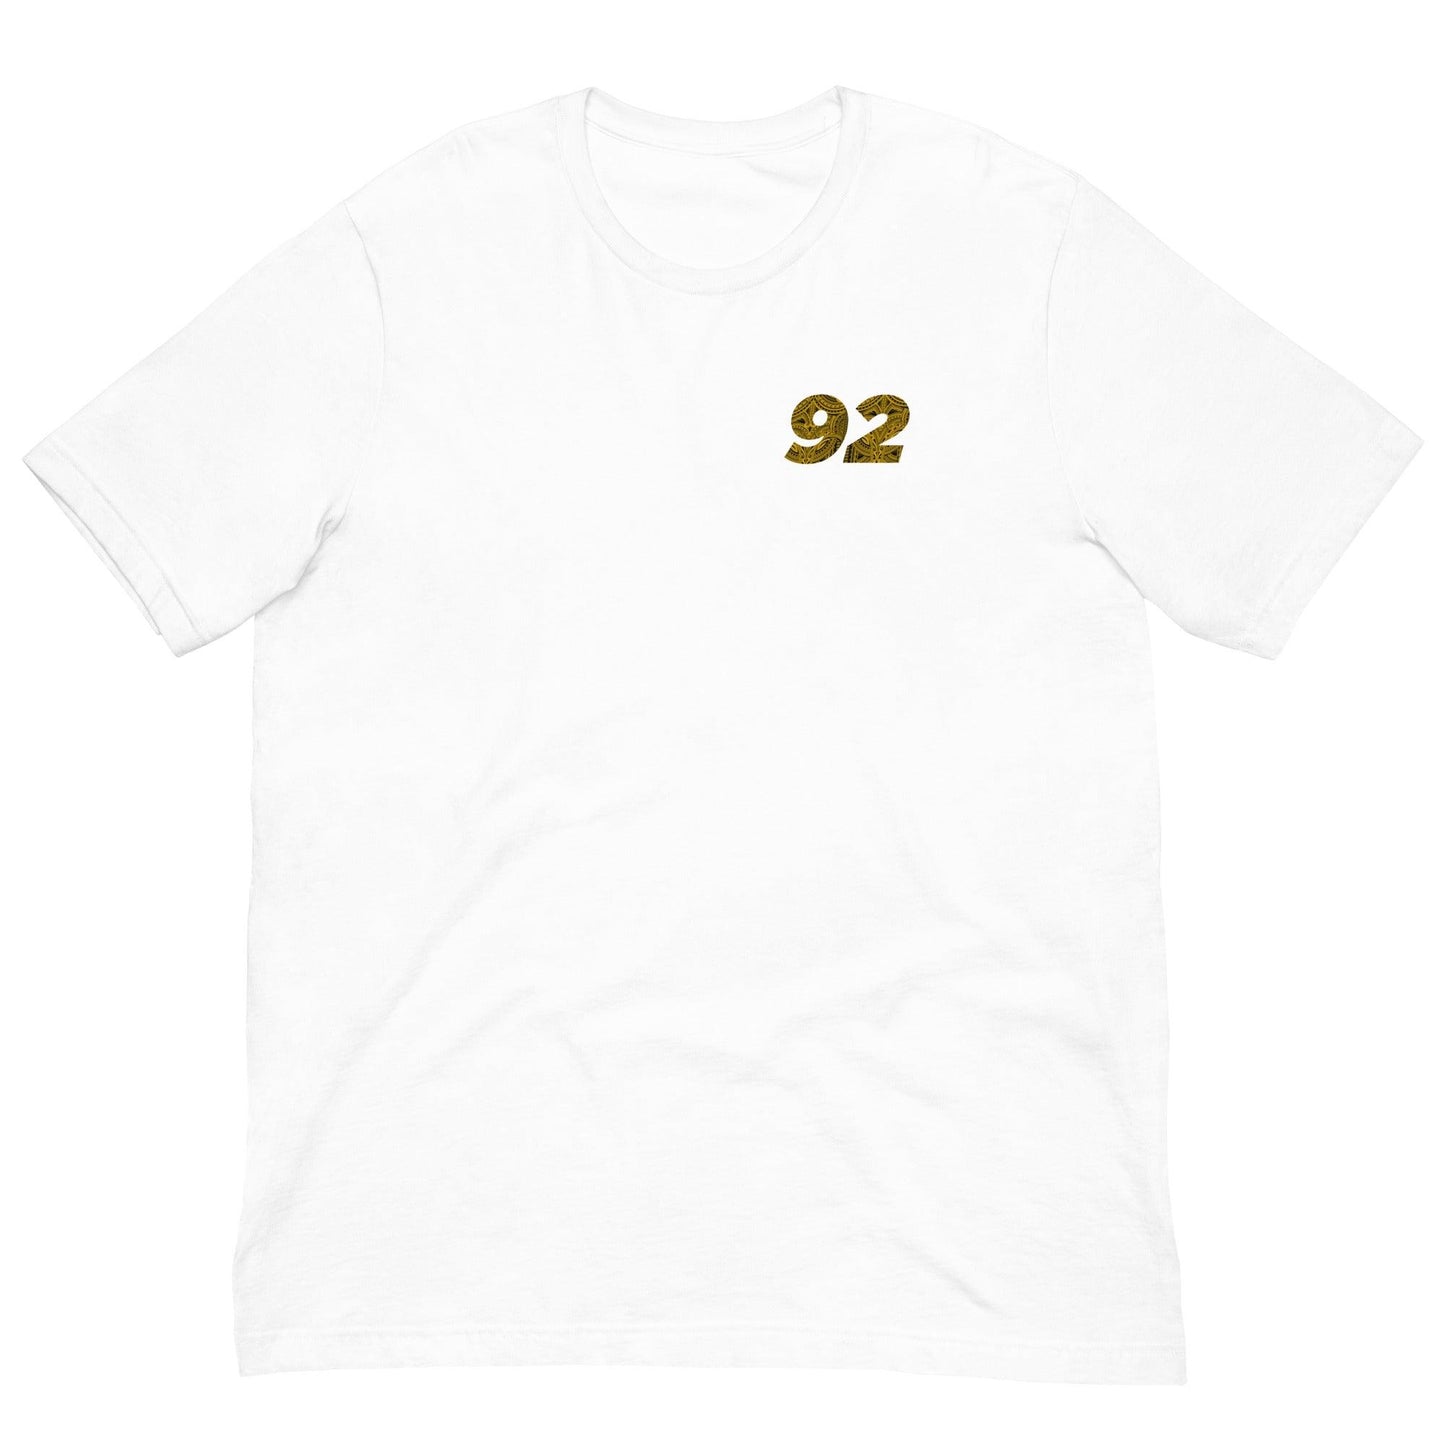 Aidan Keanaaina "92" t-shirt - Fan Arch